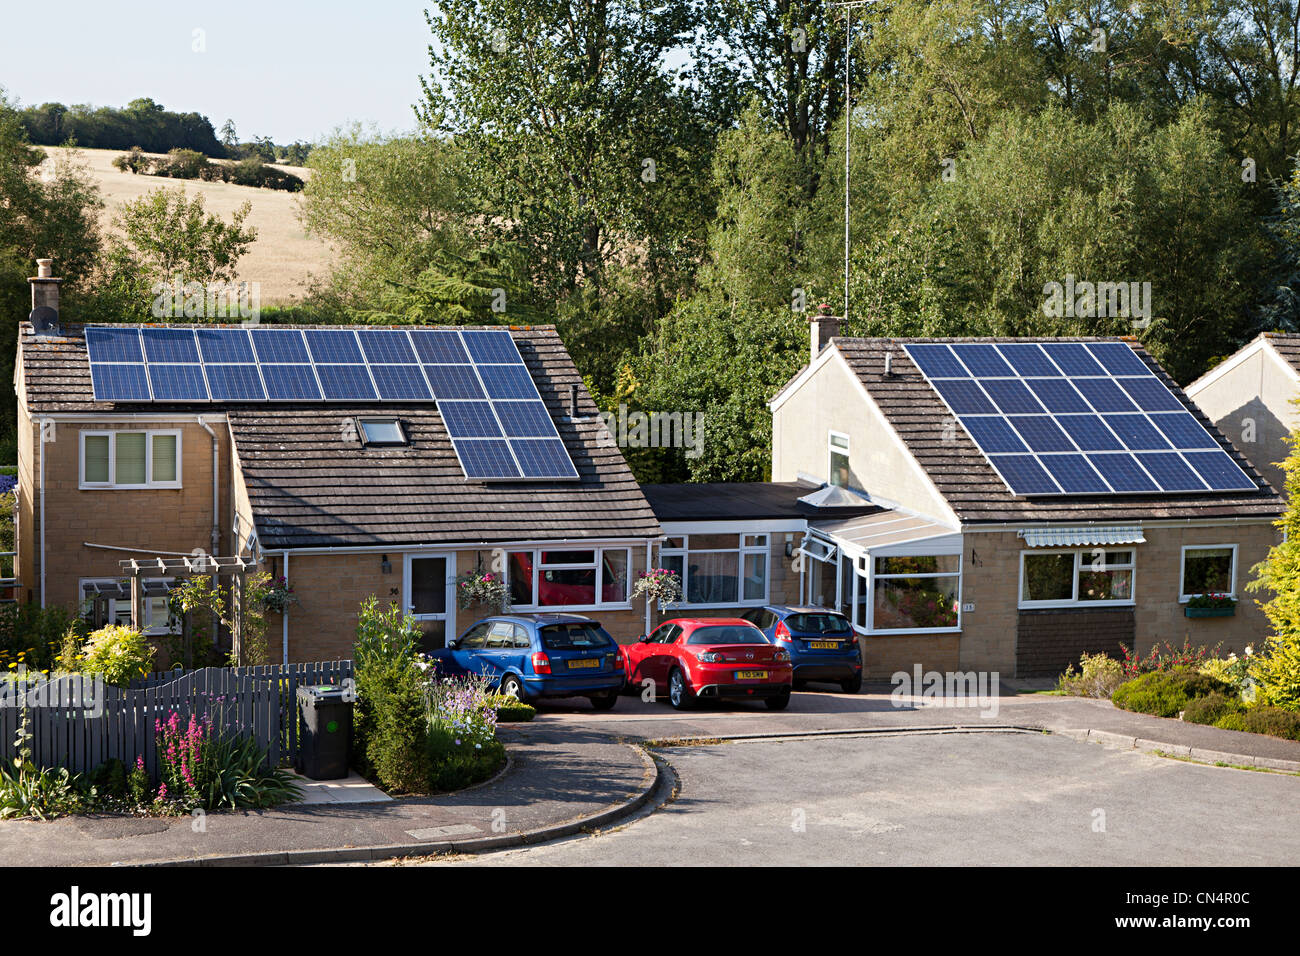 Paneles solares en los tejados de las casas, Woodstock, Oxfordshire, REINO UNIDO Foto de stock